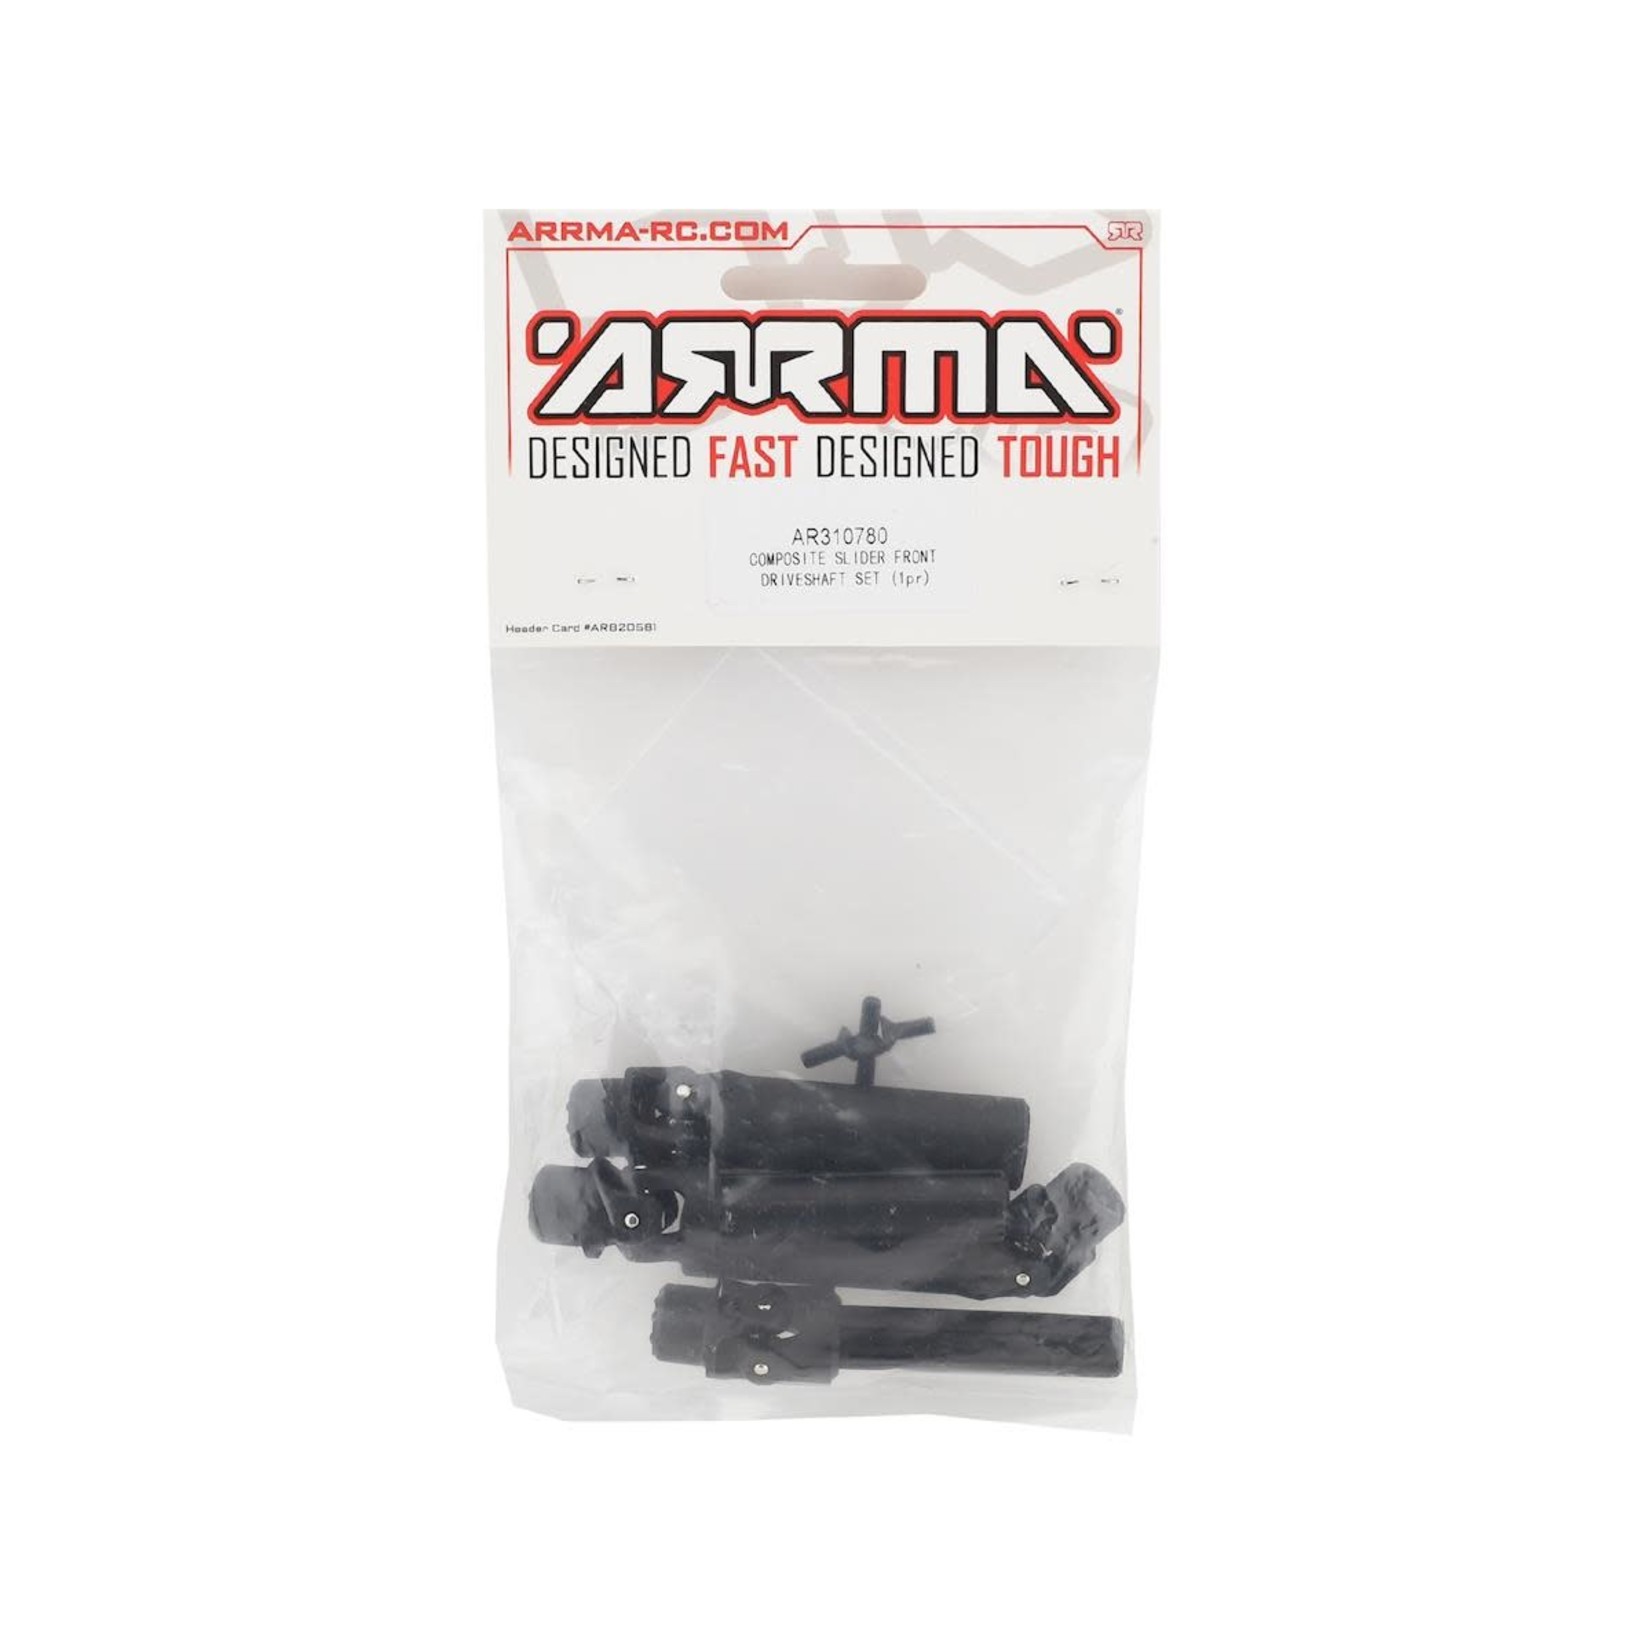 ARRMA Arrma 4x4 Composite Front Slider Driveshaft Set #AR310780